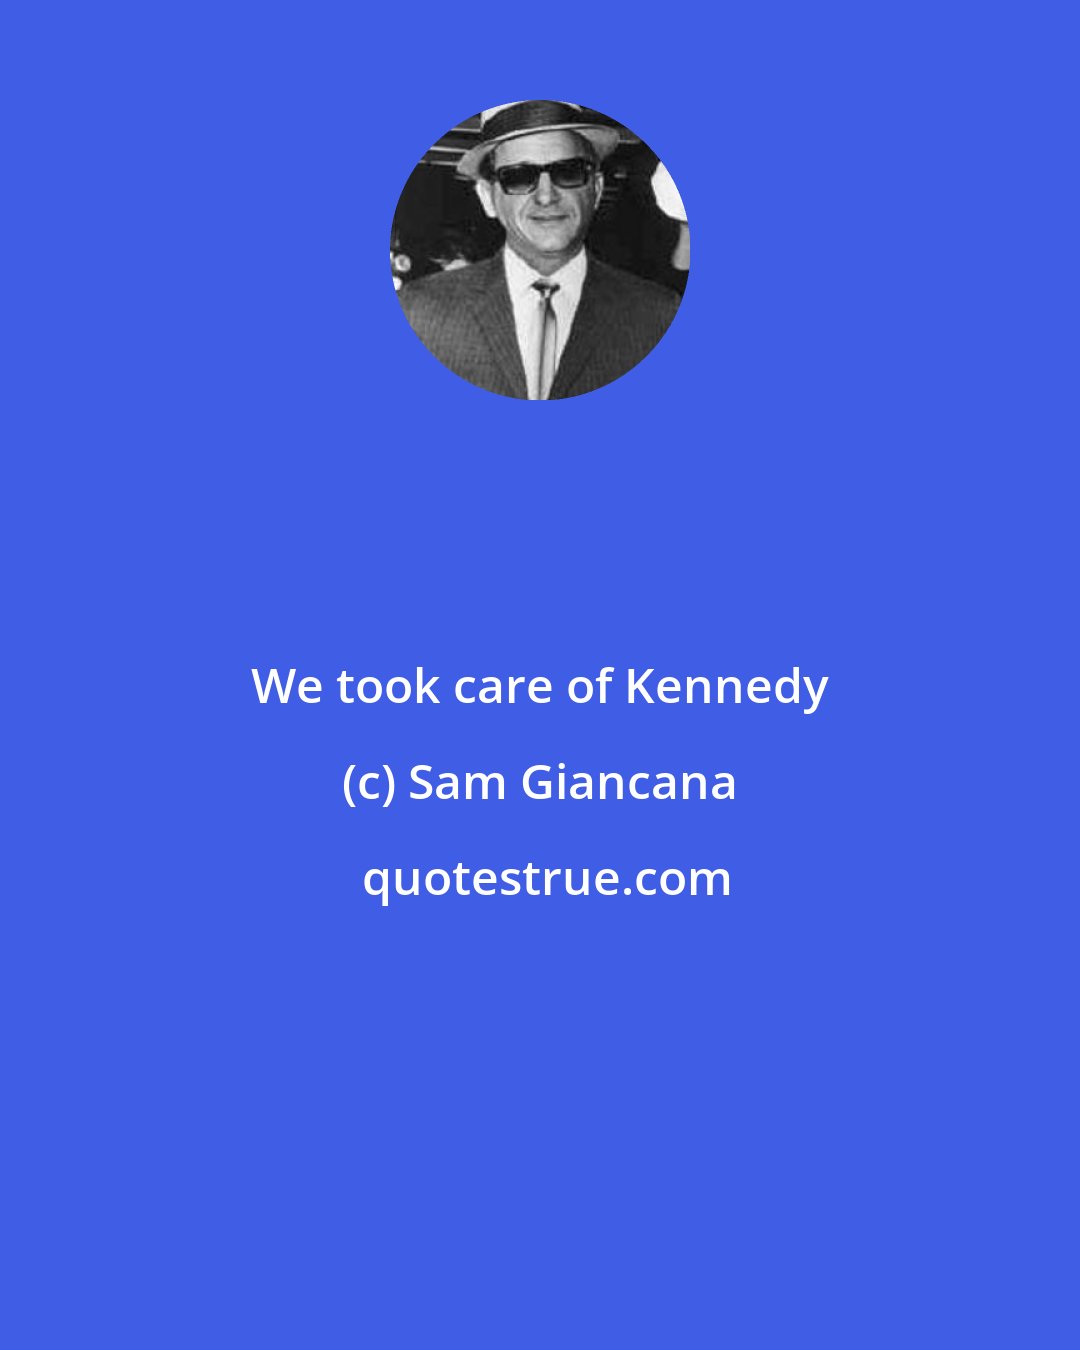 Sam Giancana: We took care of Kennedy